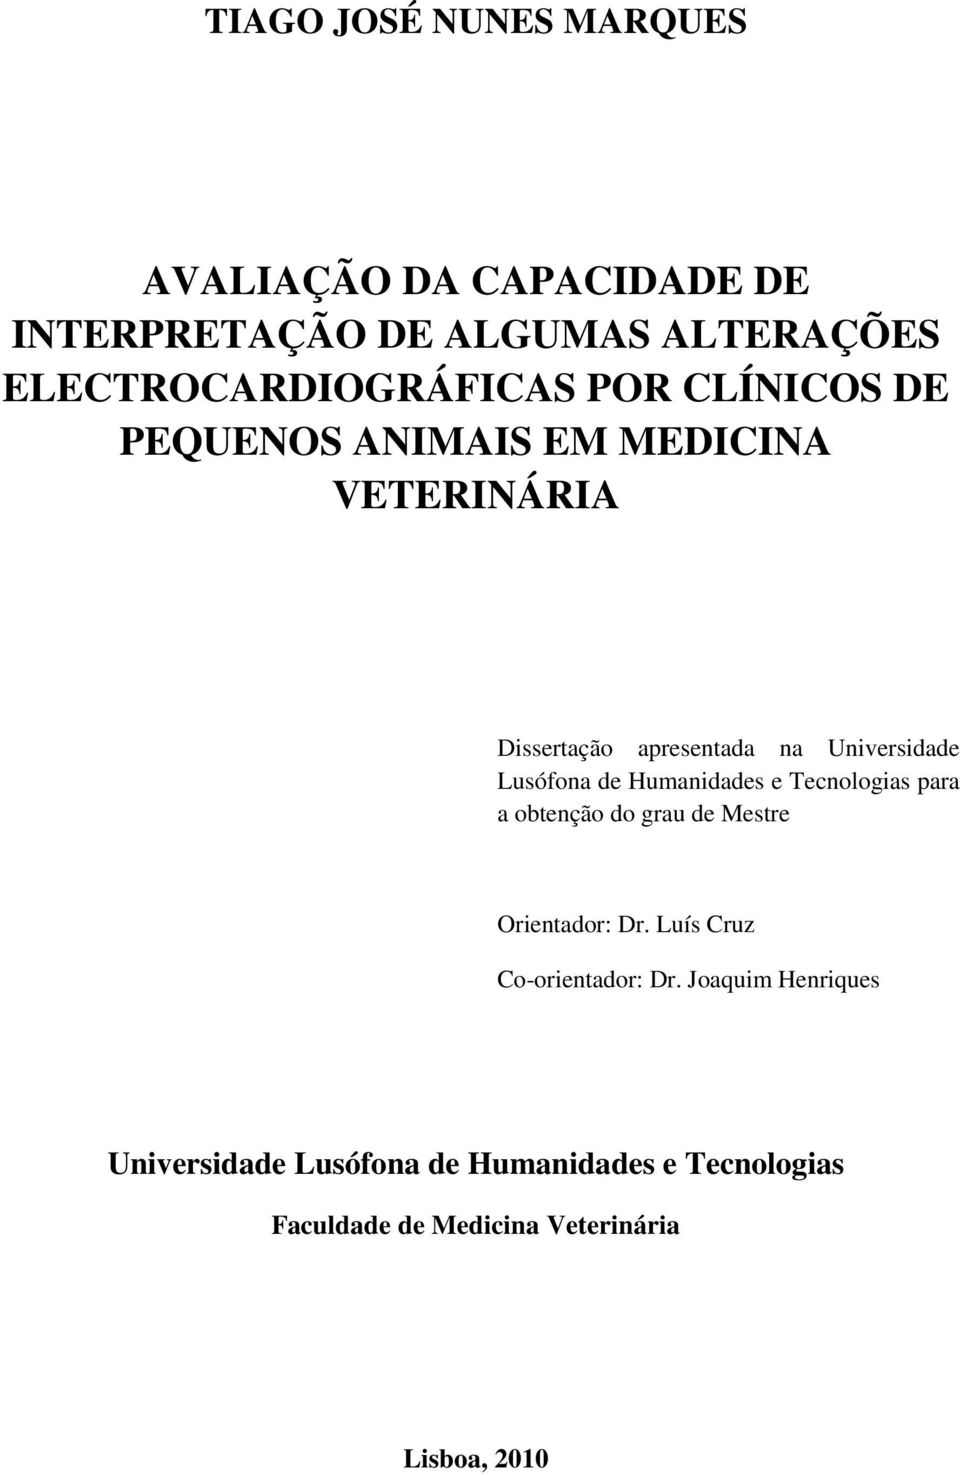 Humanidades e Tecnologias para a obtenção do grau de Mestre Orientador: Dr. Luís Cruz Co-orientador: Dr.